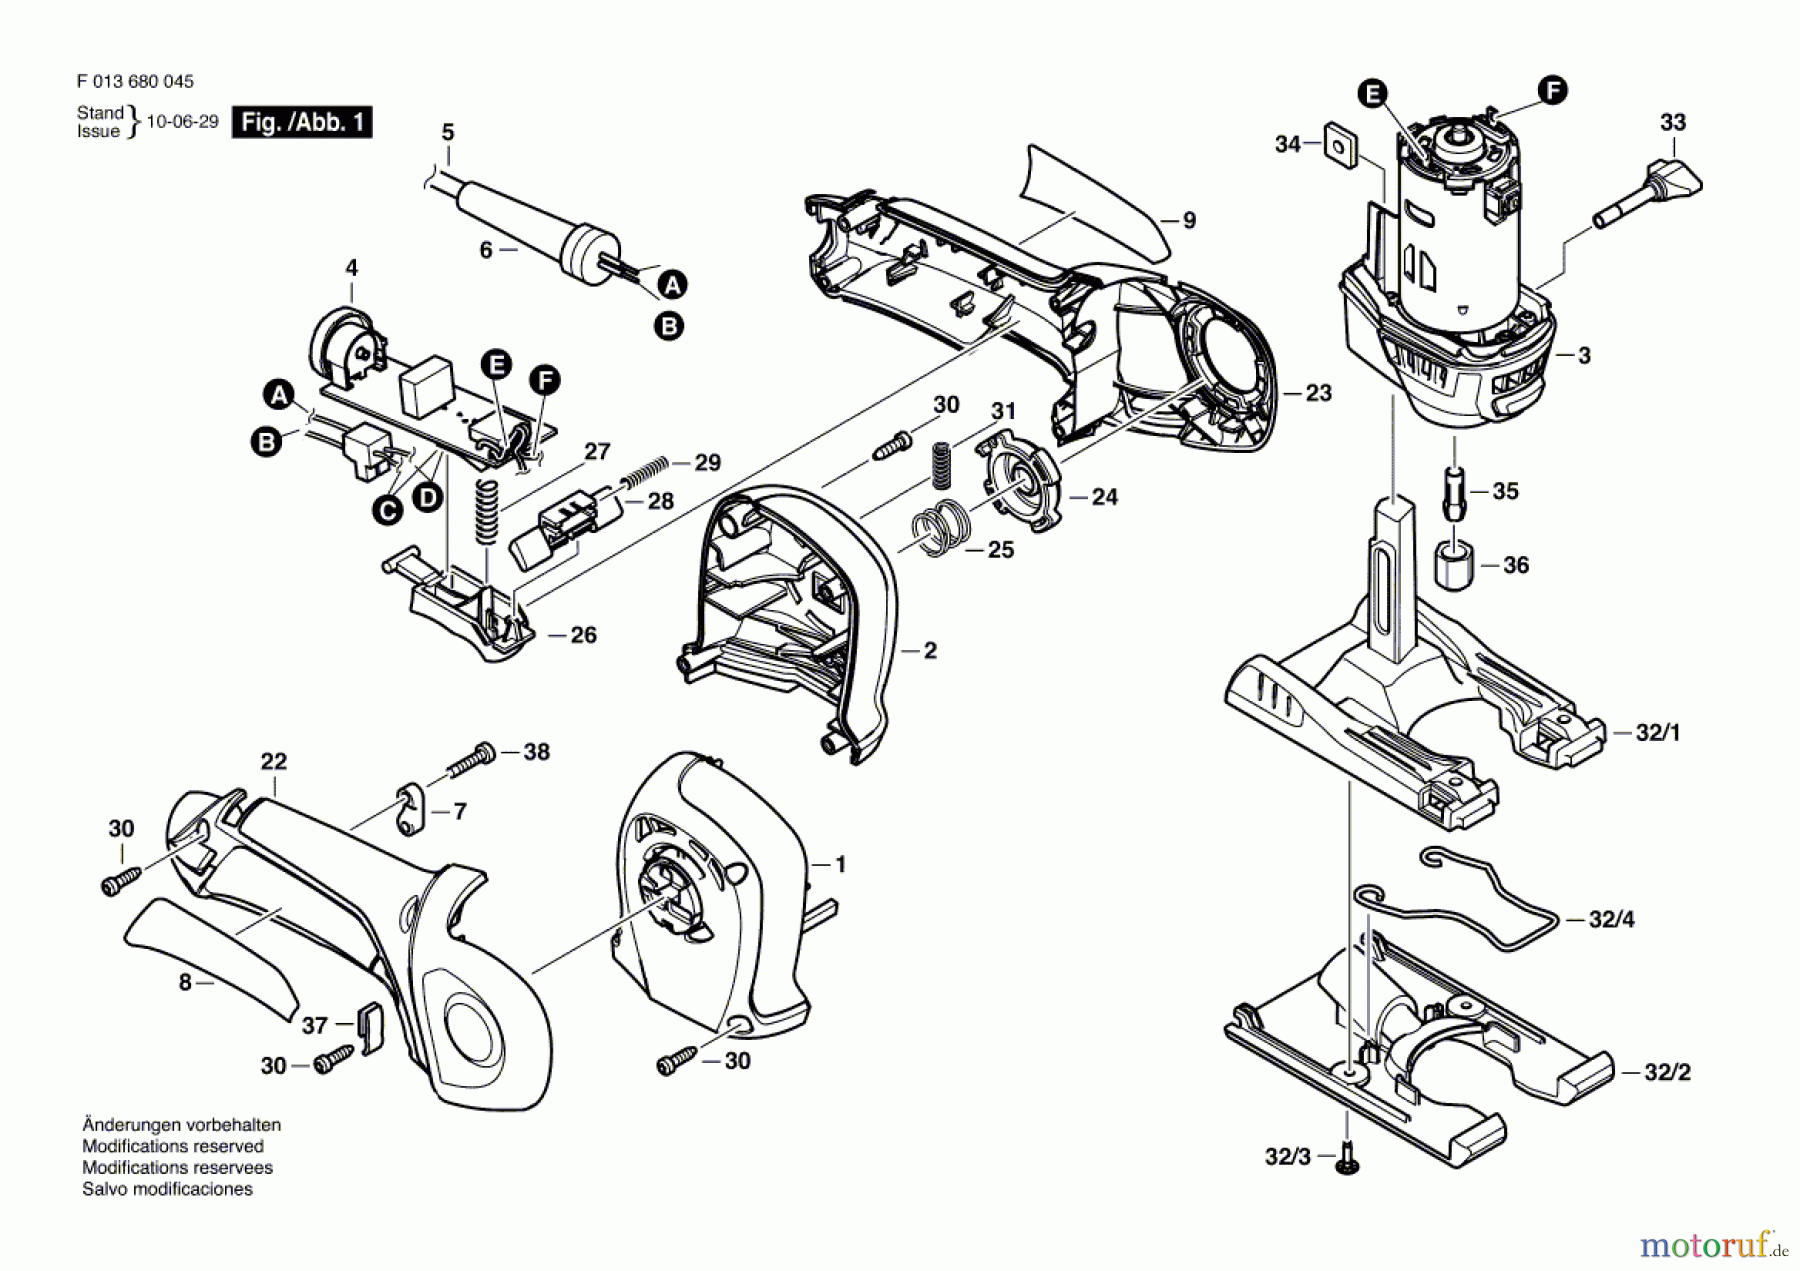  Bosch Werkzeug Drehwerkzeug 6800 Seite 1